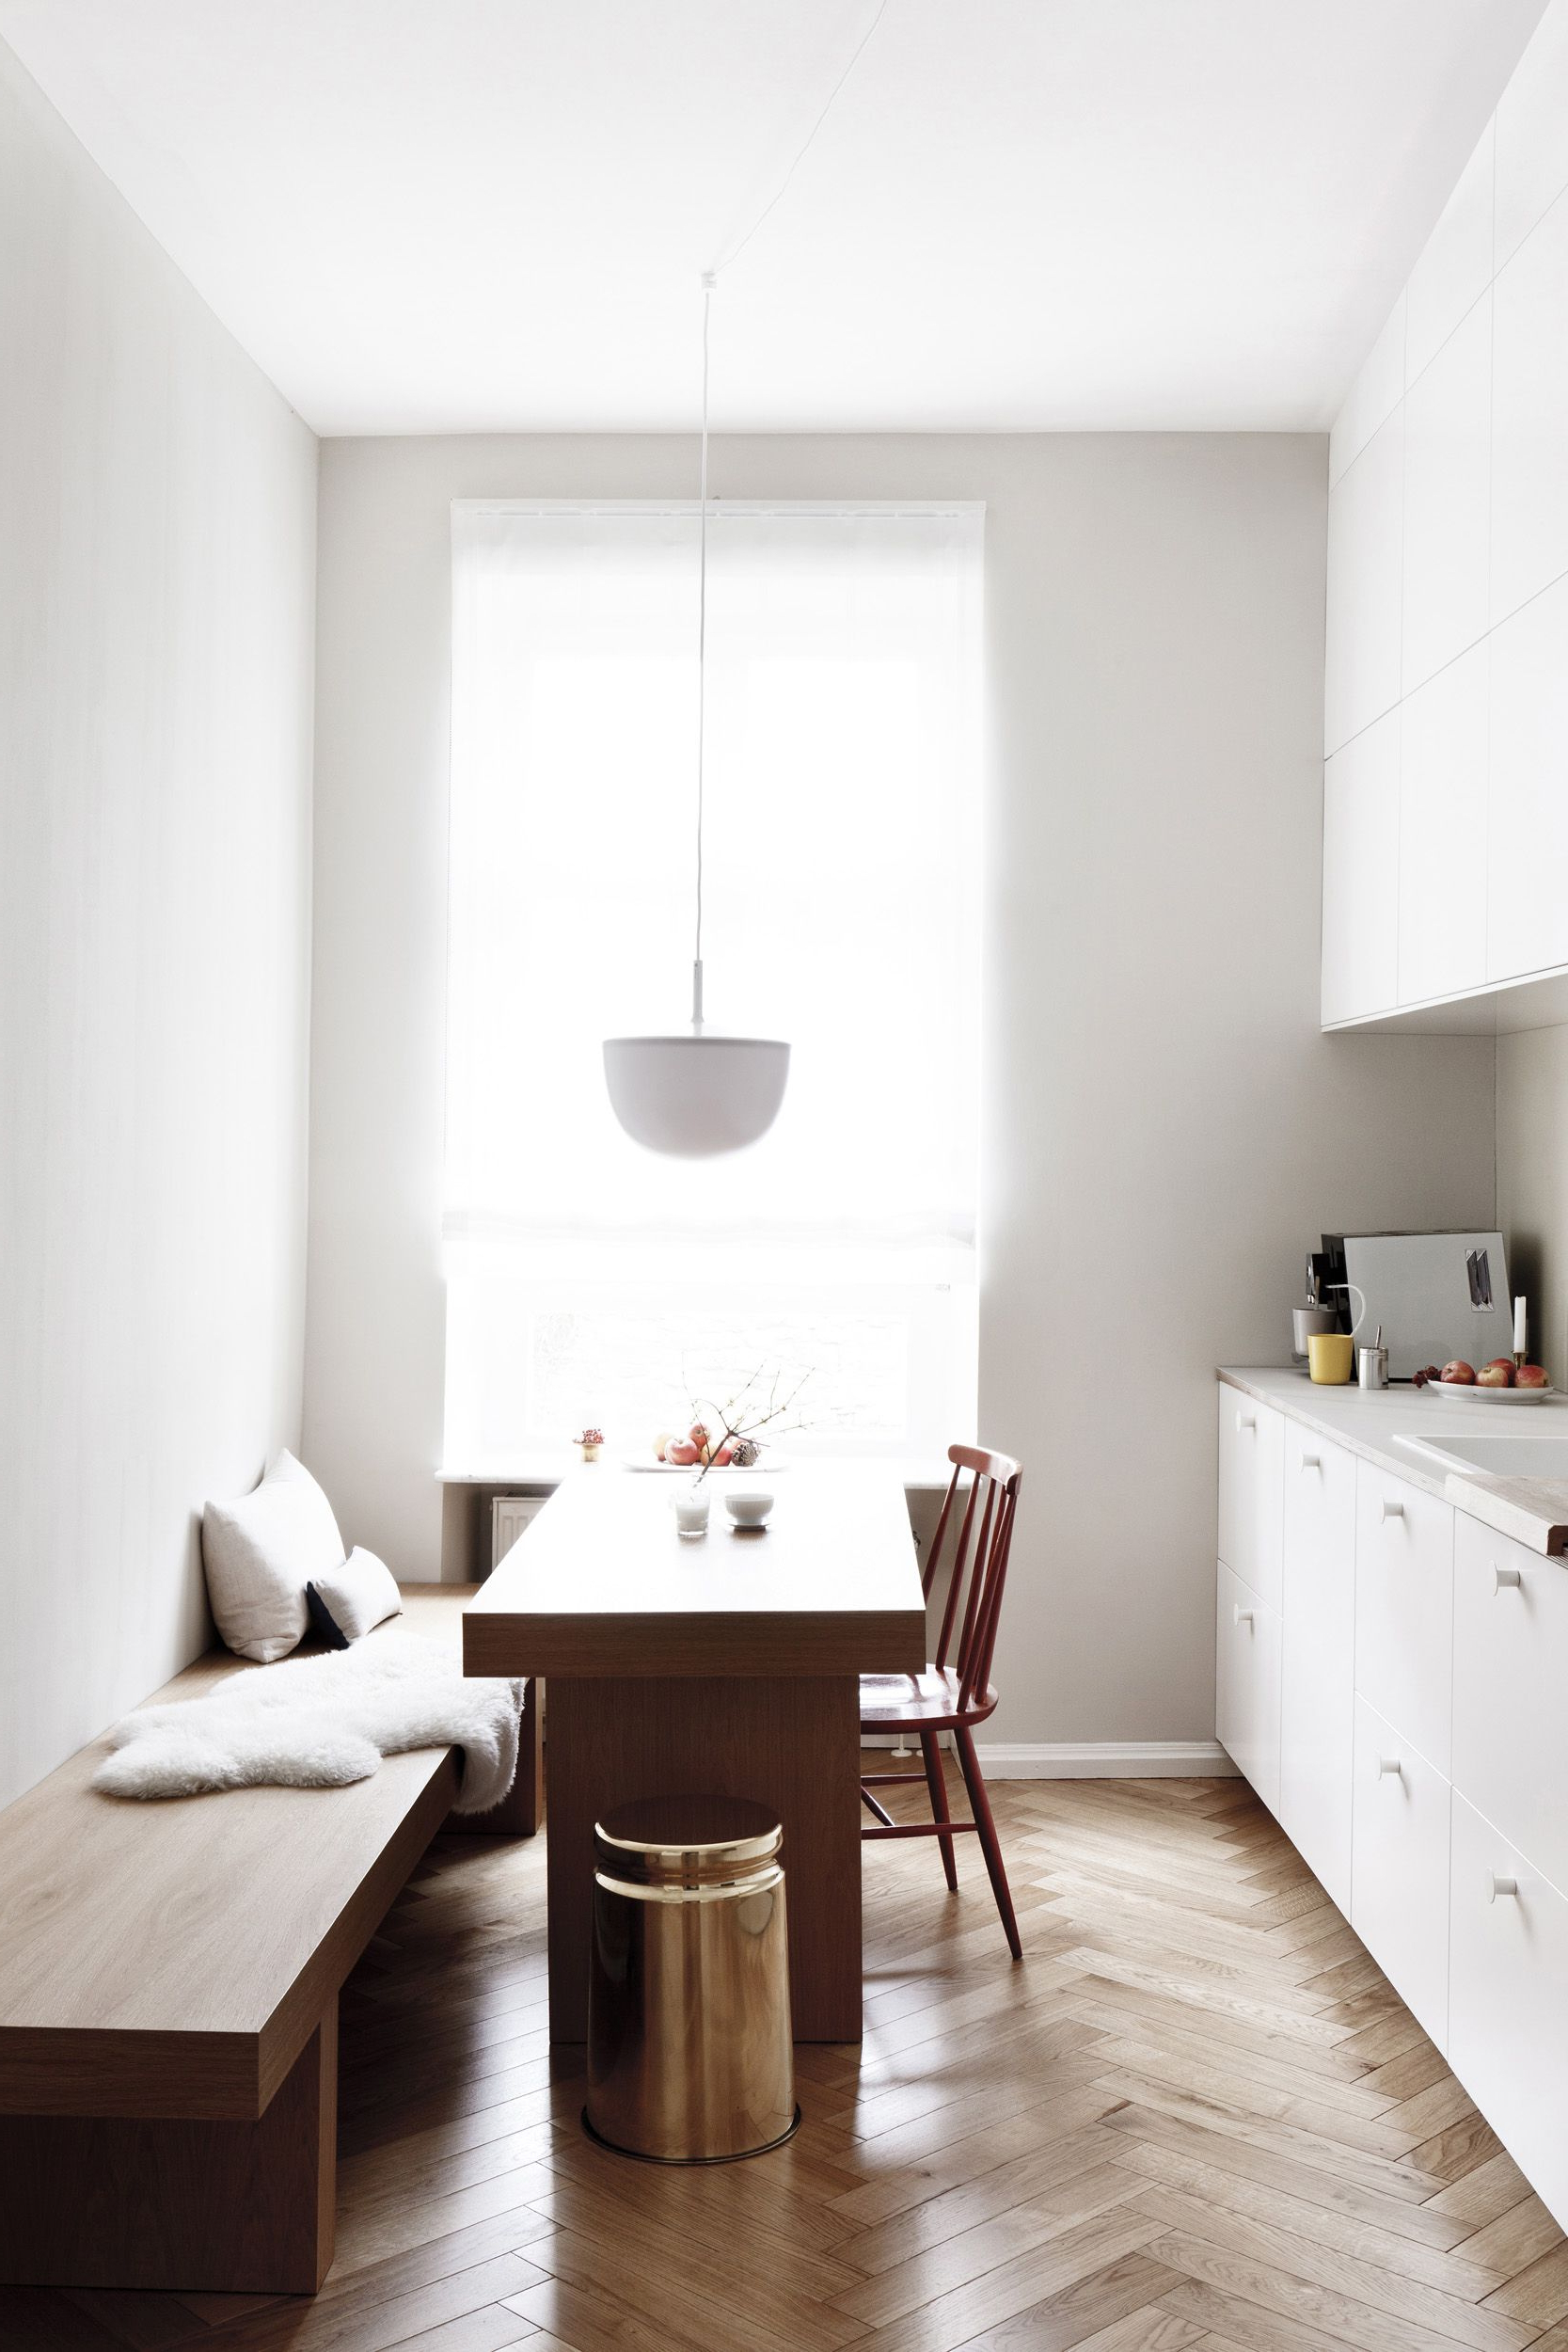 60 Best Minimalist Apartment Design Ideas Images